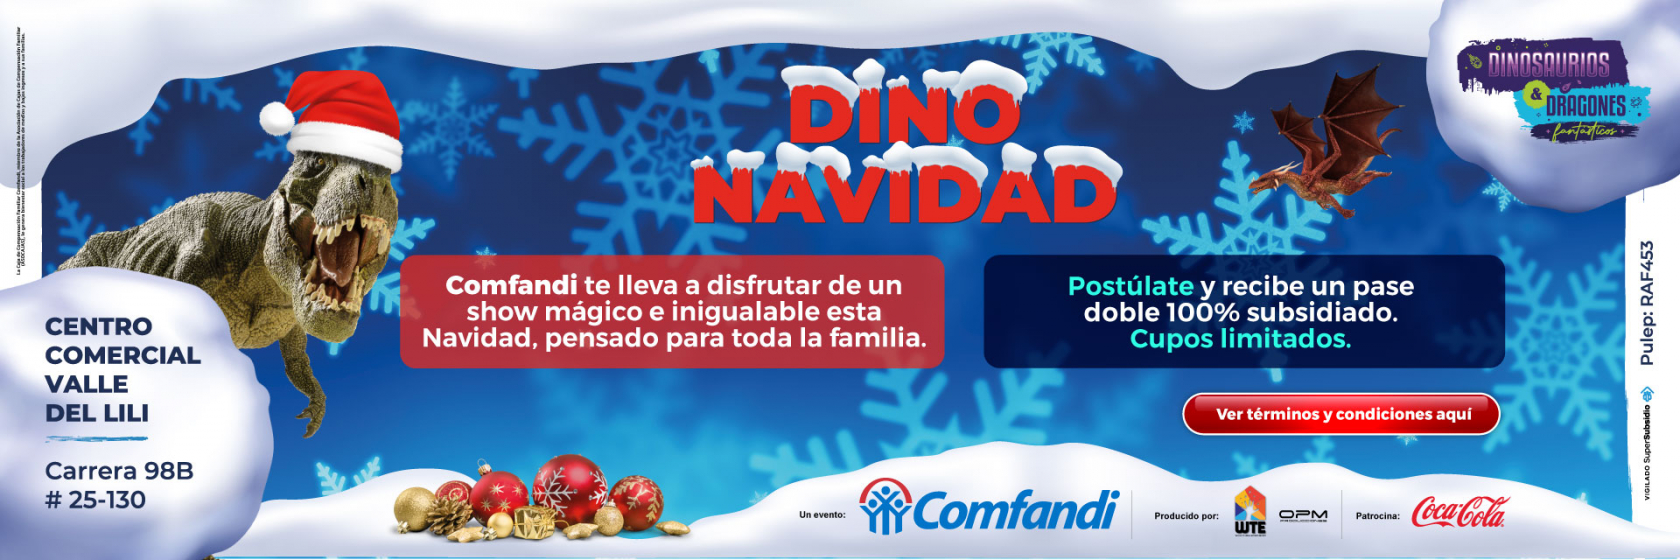 Banner Dino Navidad